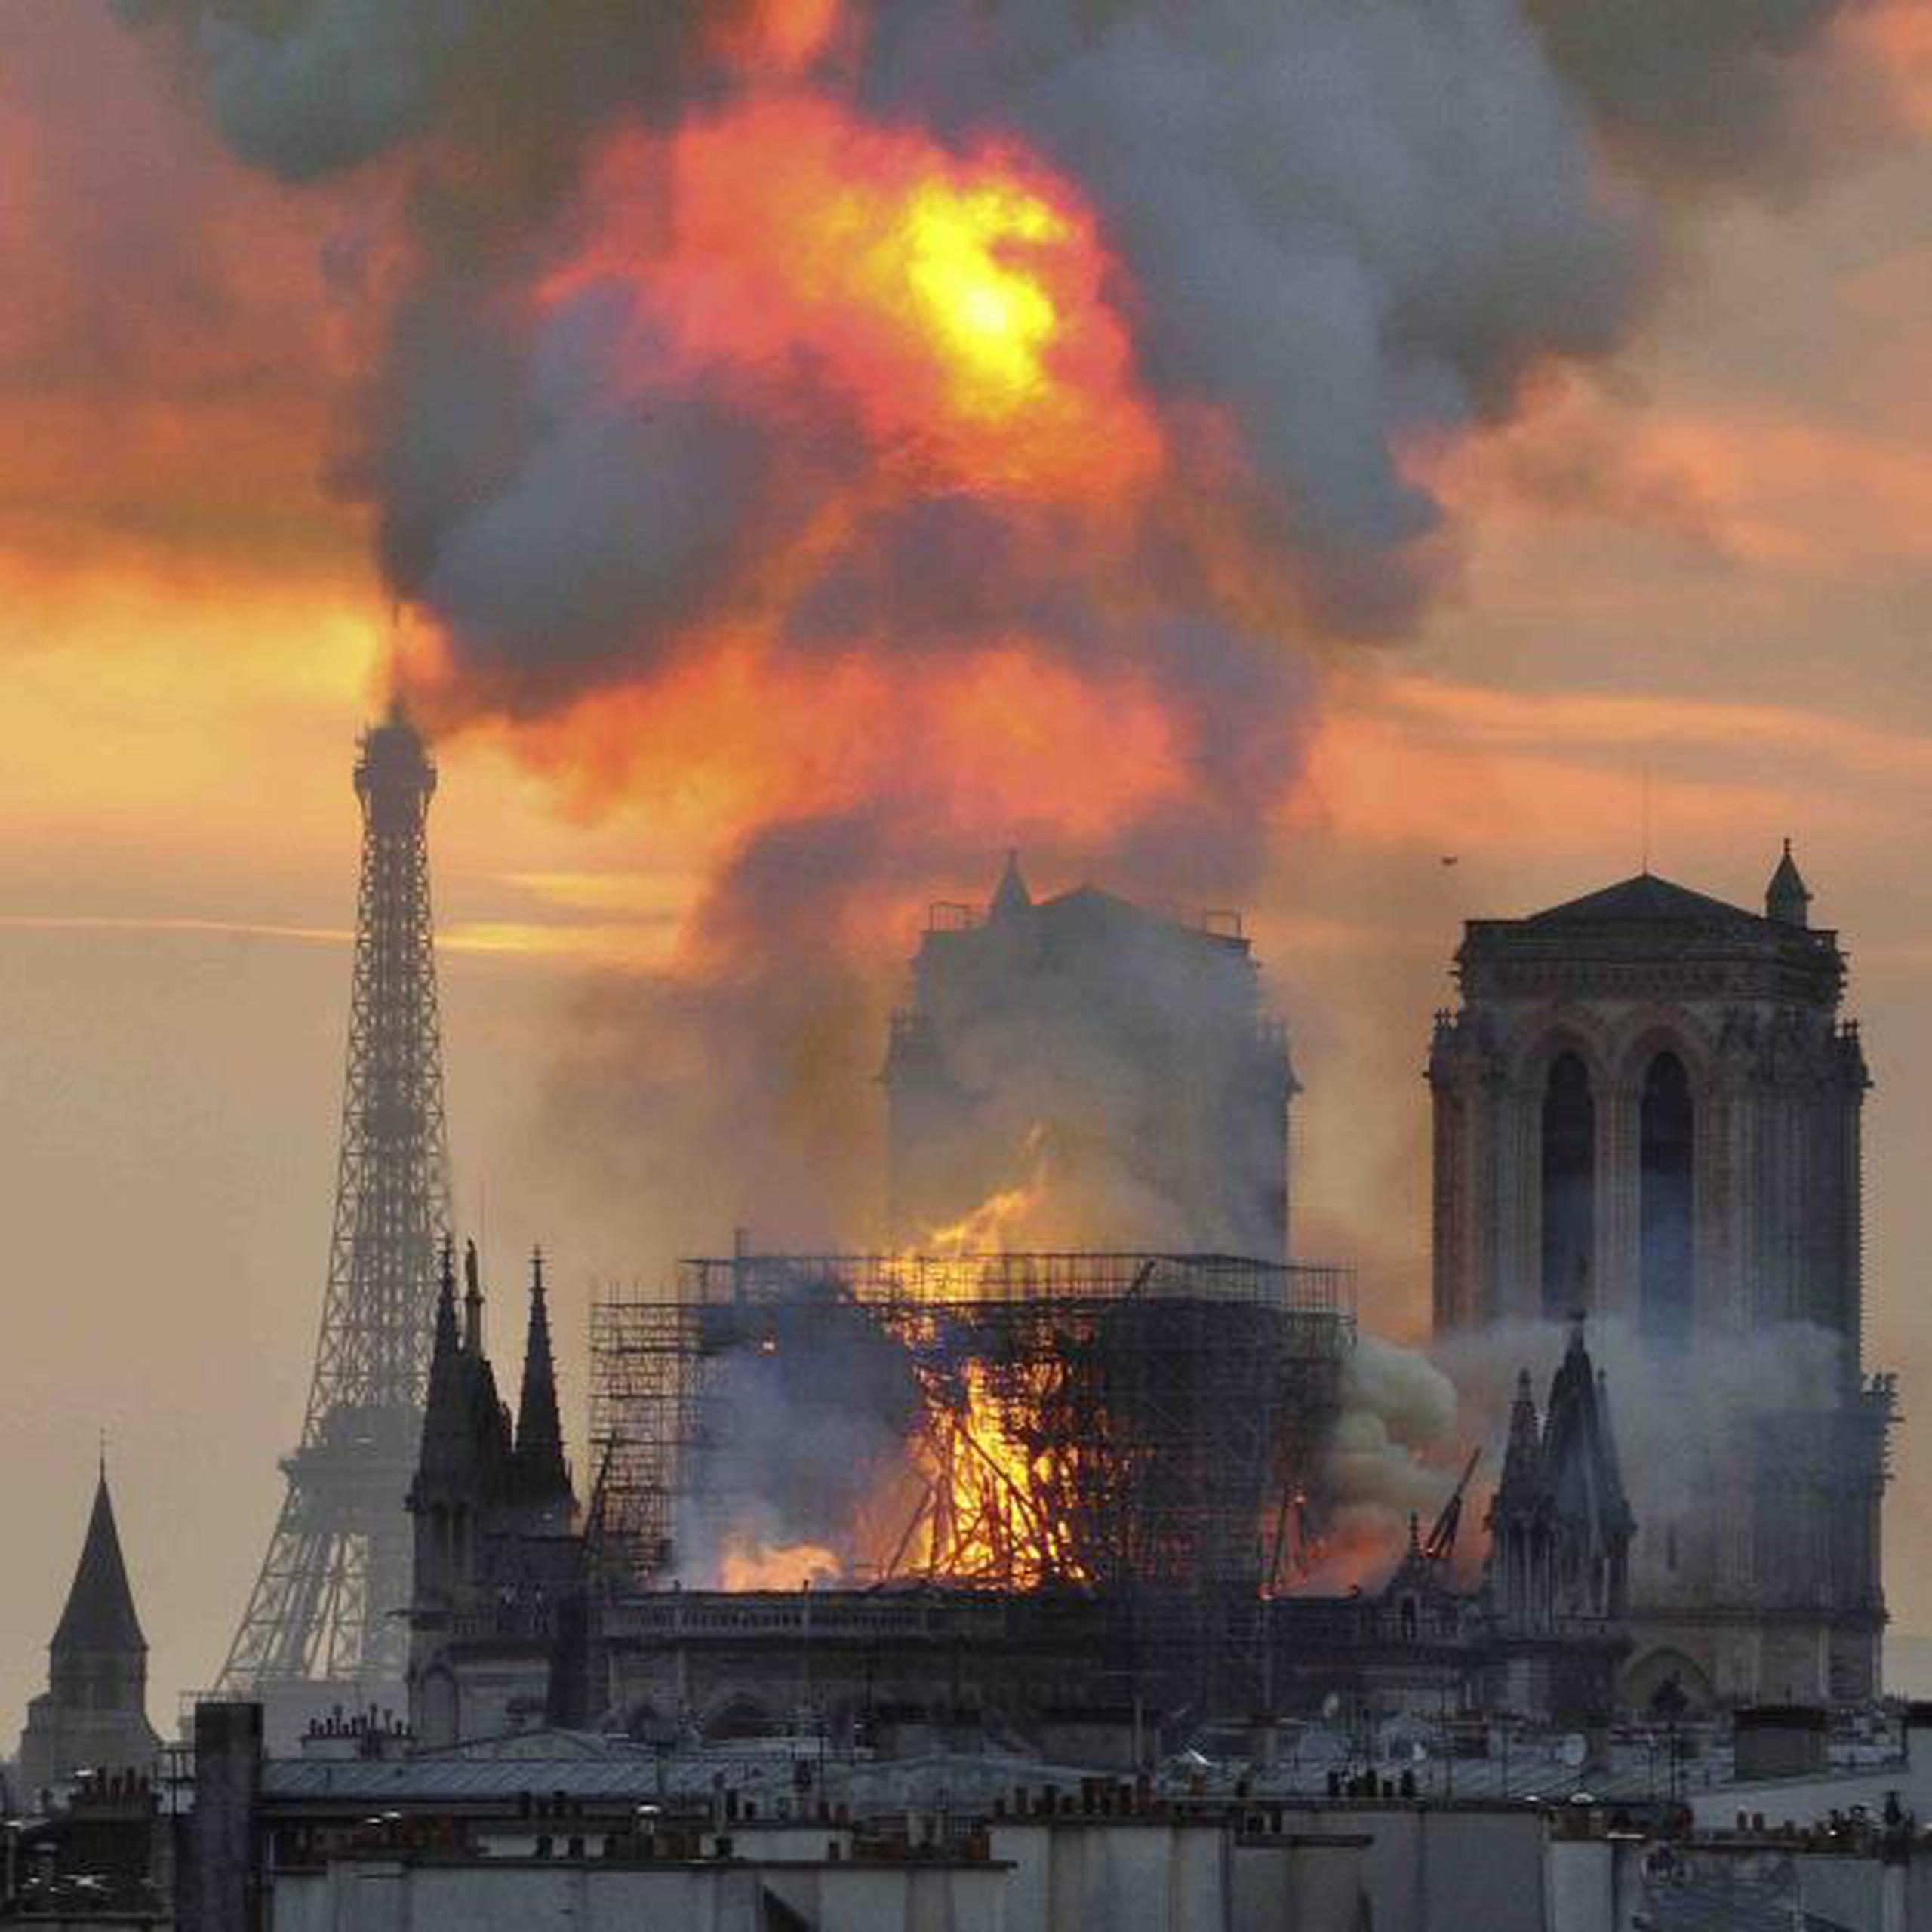 Se tomarán medidas de precaución para proteger a los trabajadores cuando empiece la reconstrucción de la catedral. (AP / Thierry Mallet)